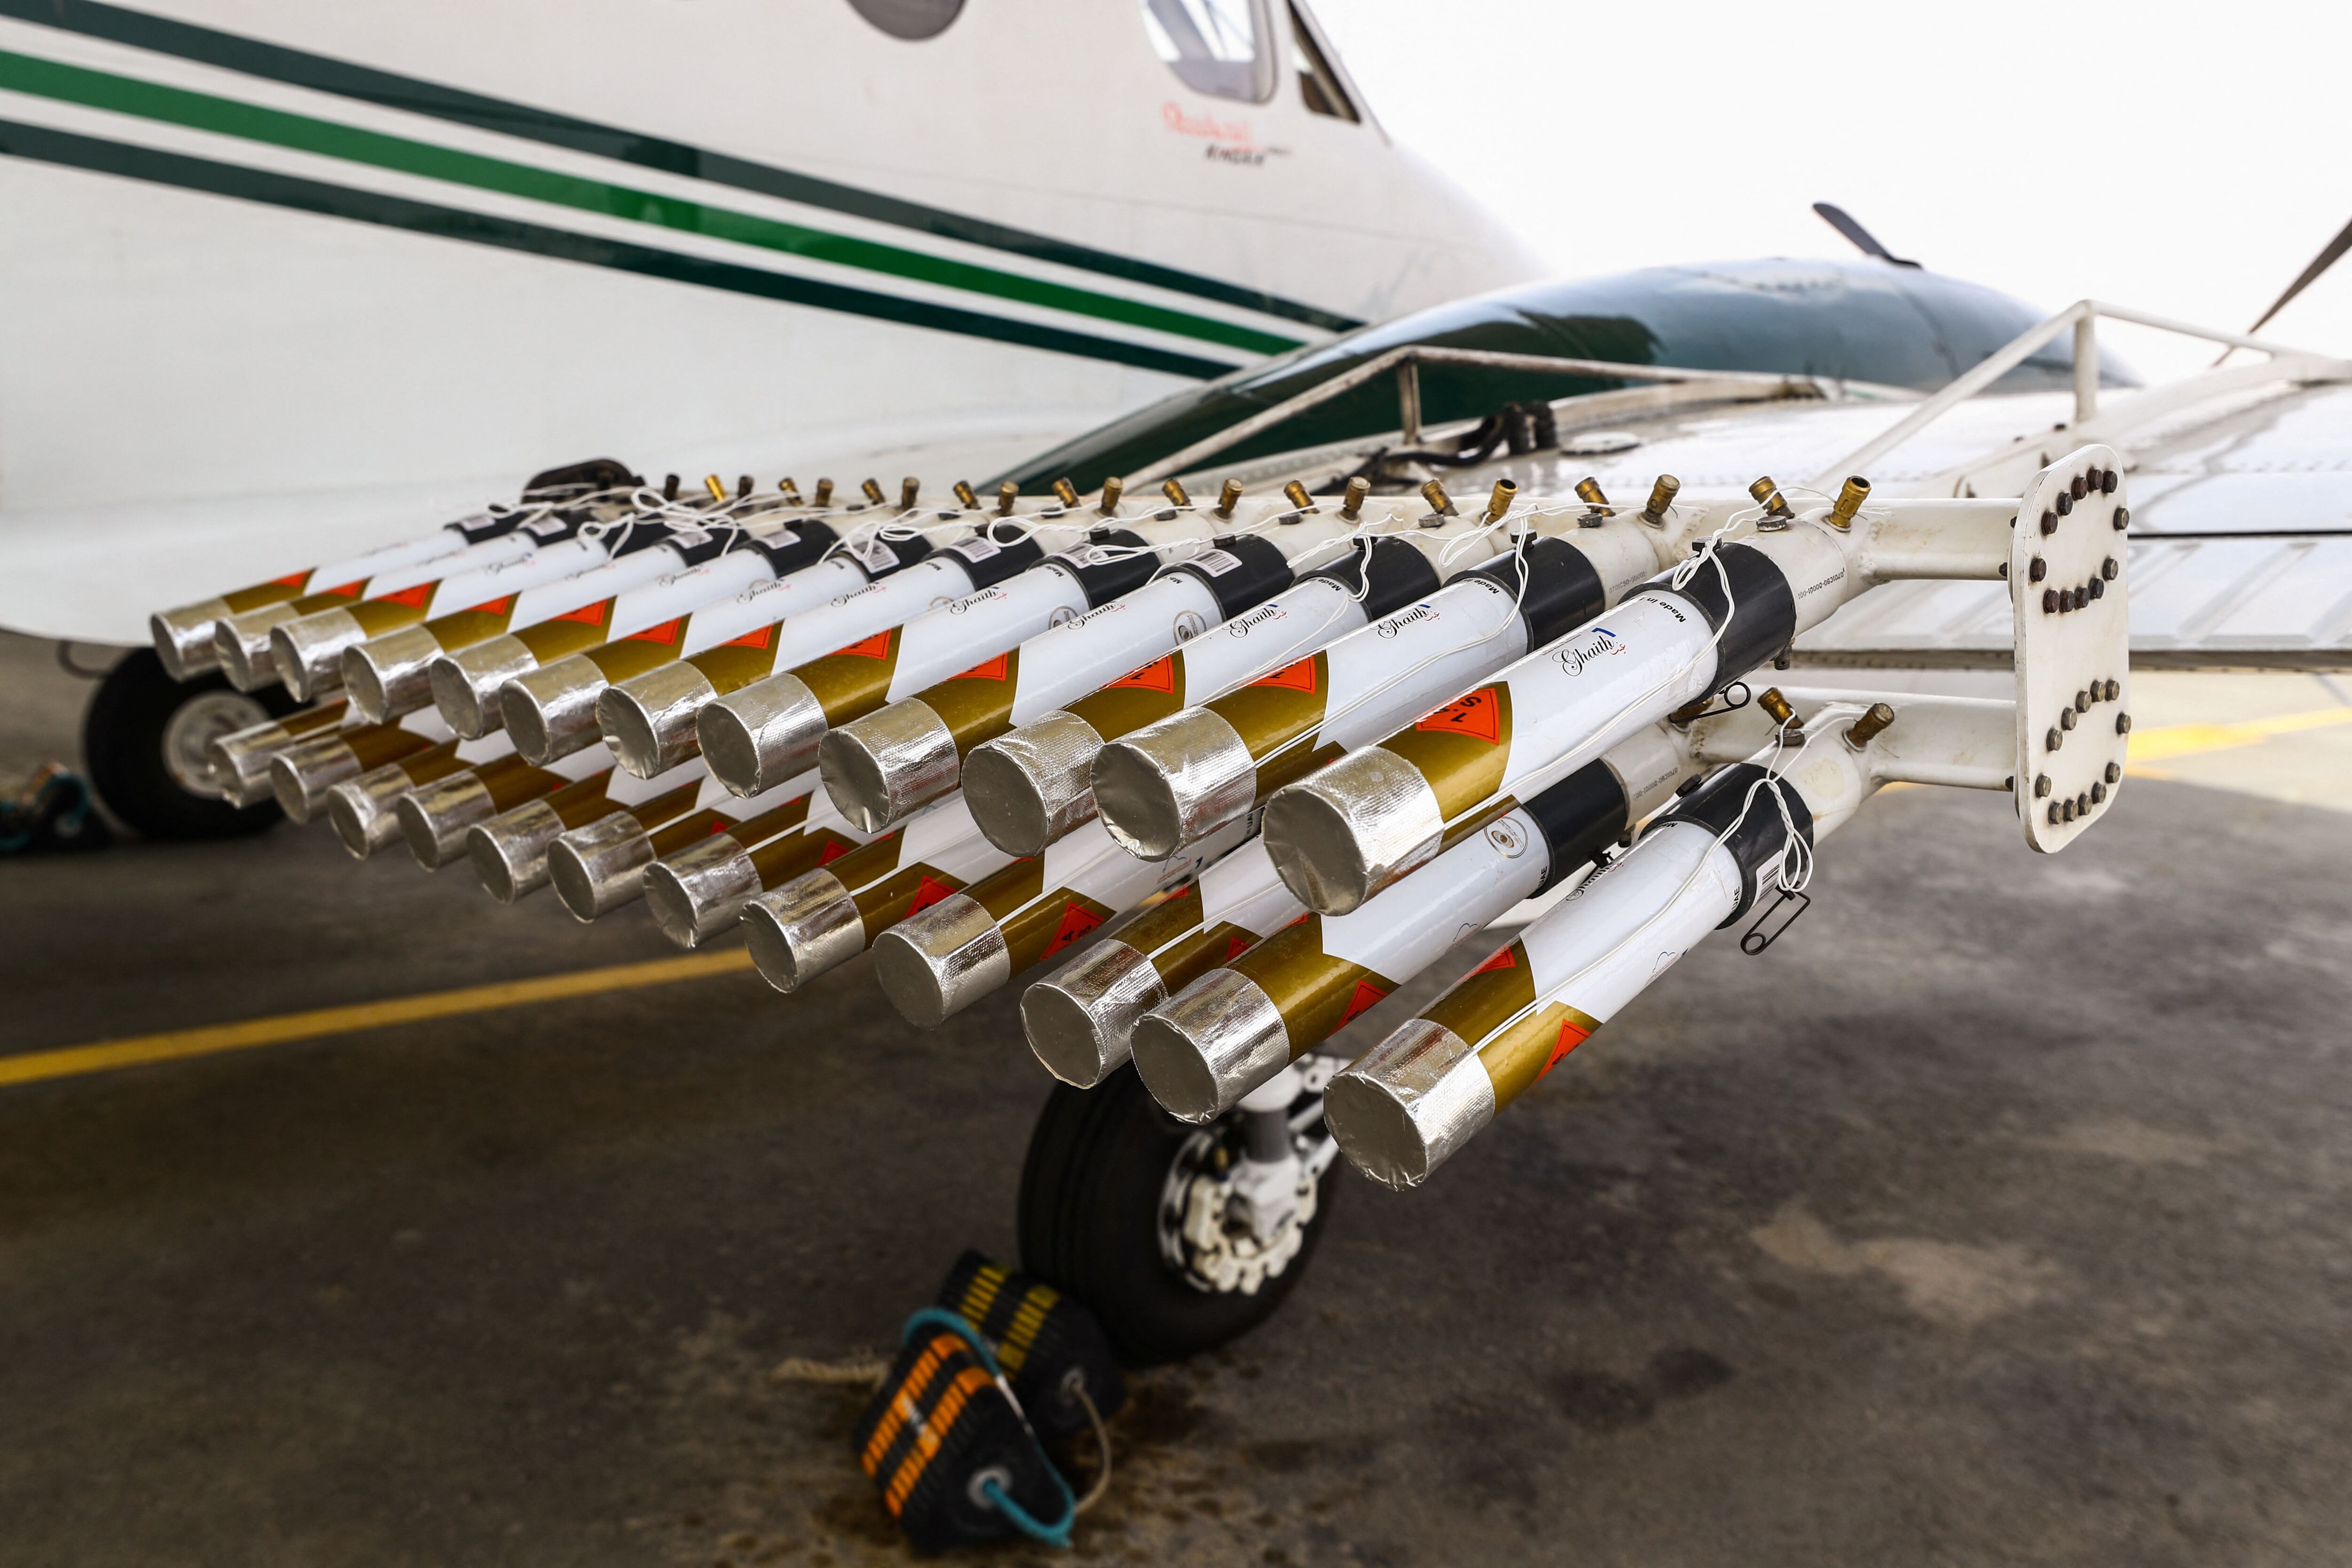 La eficacia del método radica en la dispersión de materiales higroscópicos a través de aviones especializados, que provocan un aumento en el tamaño de las gotas de agua hasta que se precipitan como lluvia. (REUTERS/Amr Alfiky)